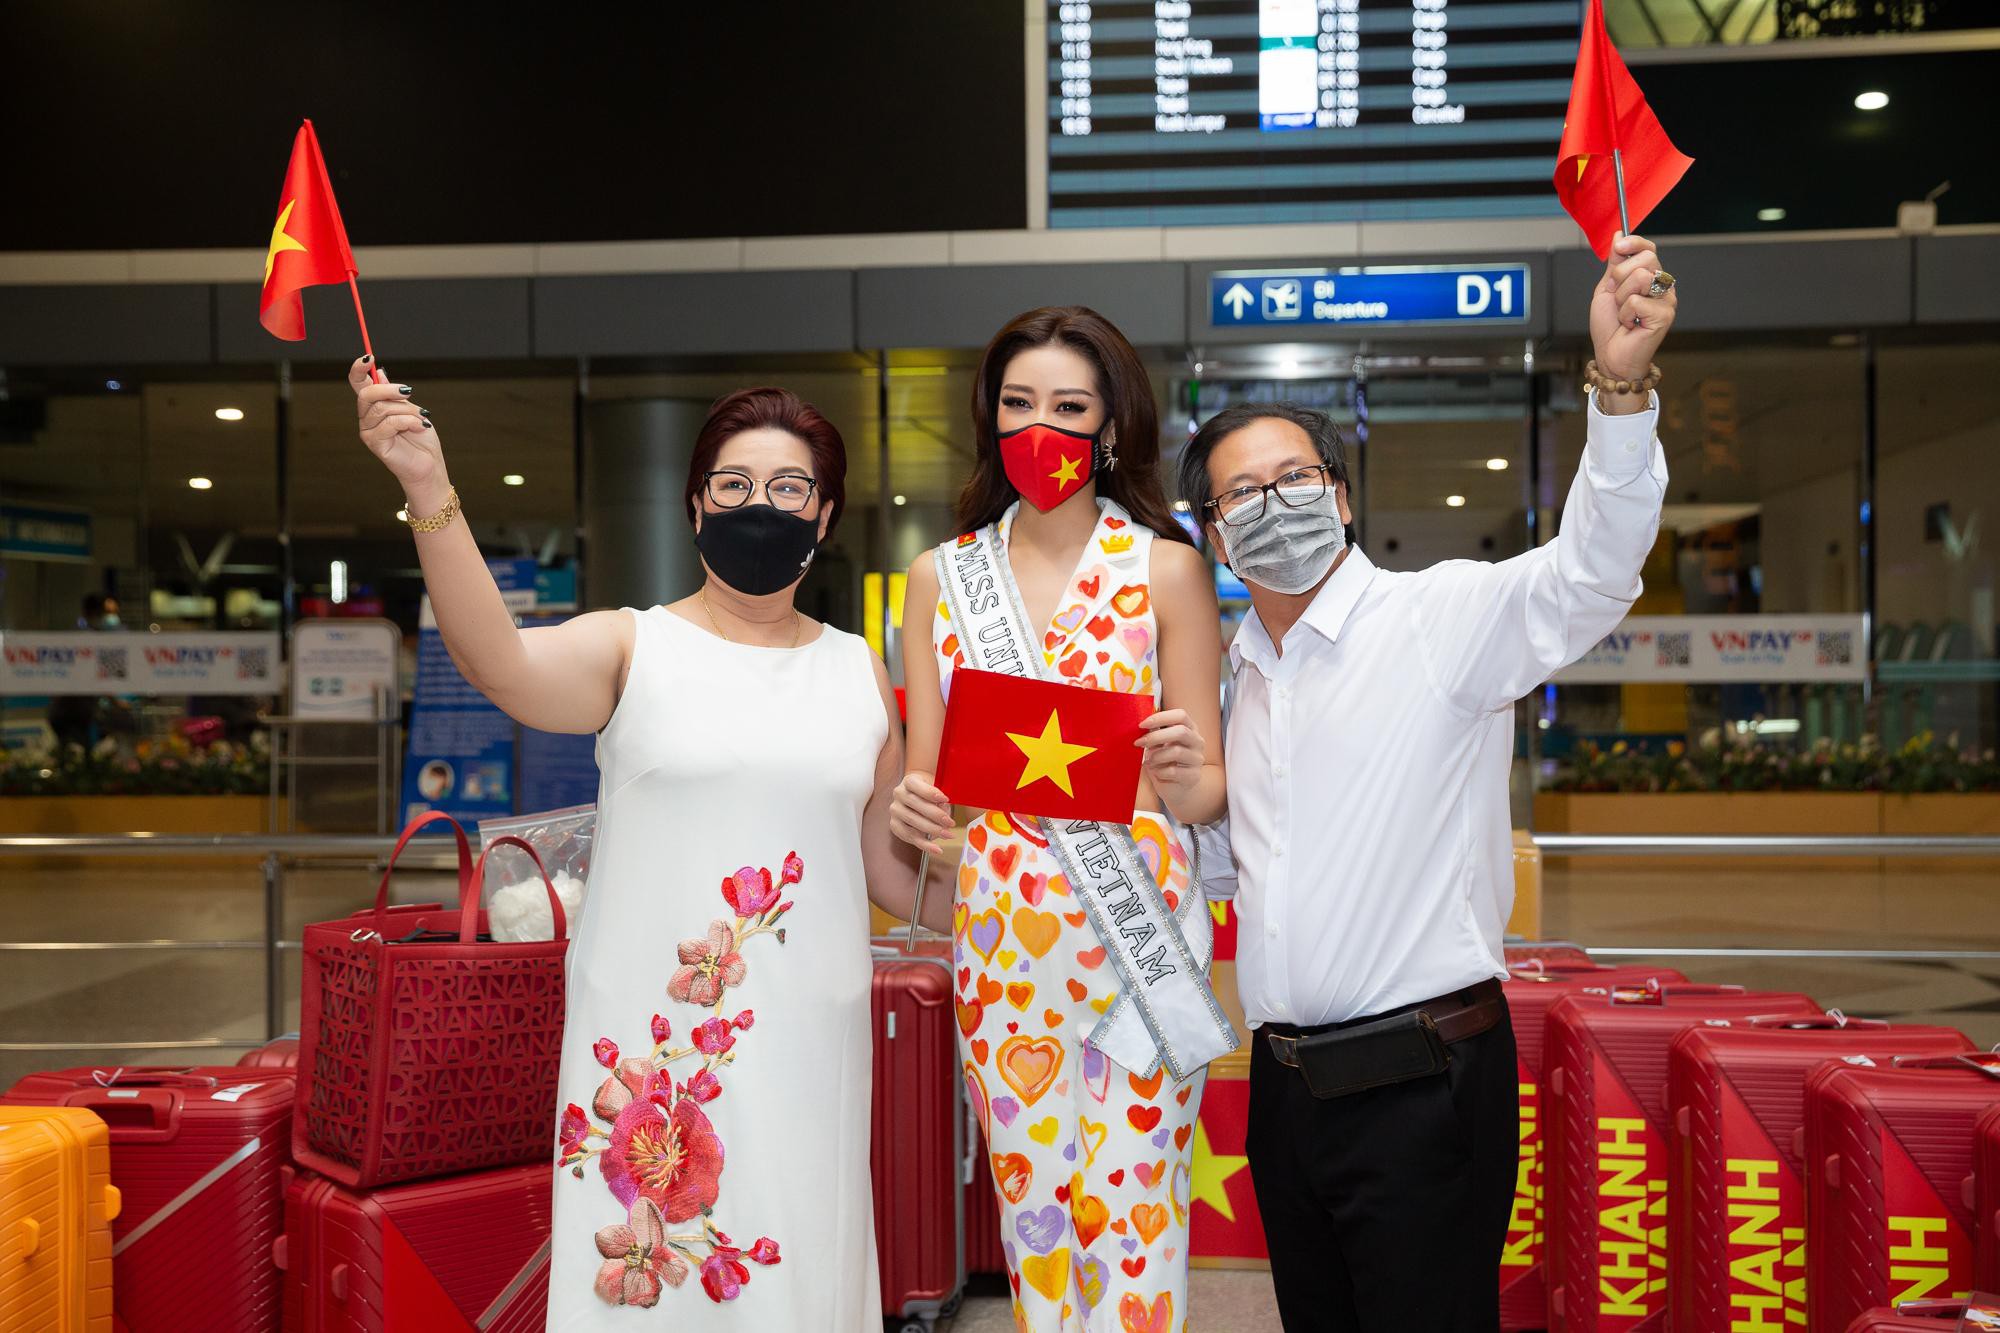 Hoa hậu Khánh Vân liên tục biến hóa phong cách thời trang sân bay khi lên đường sang Mỹ dự thi Miss Universe 2020 - Ảnh 7.